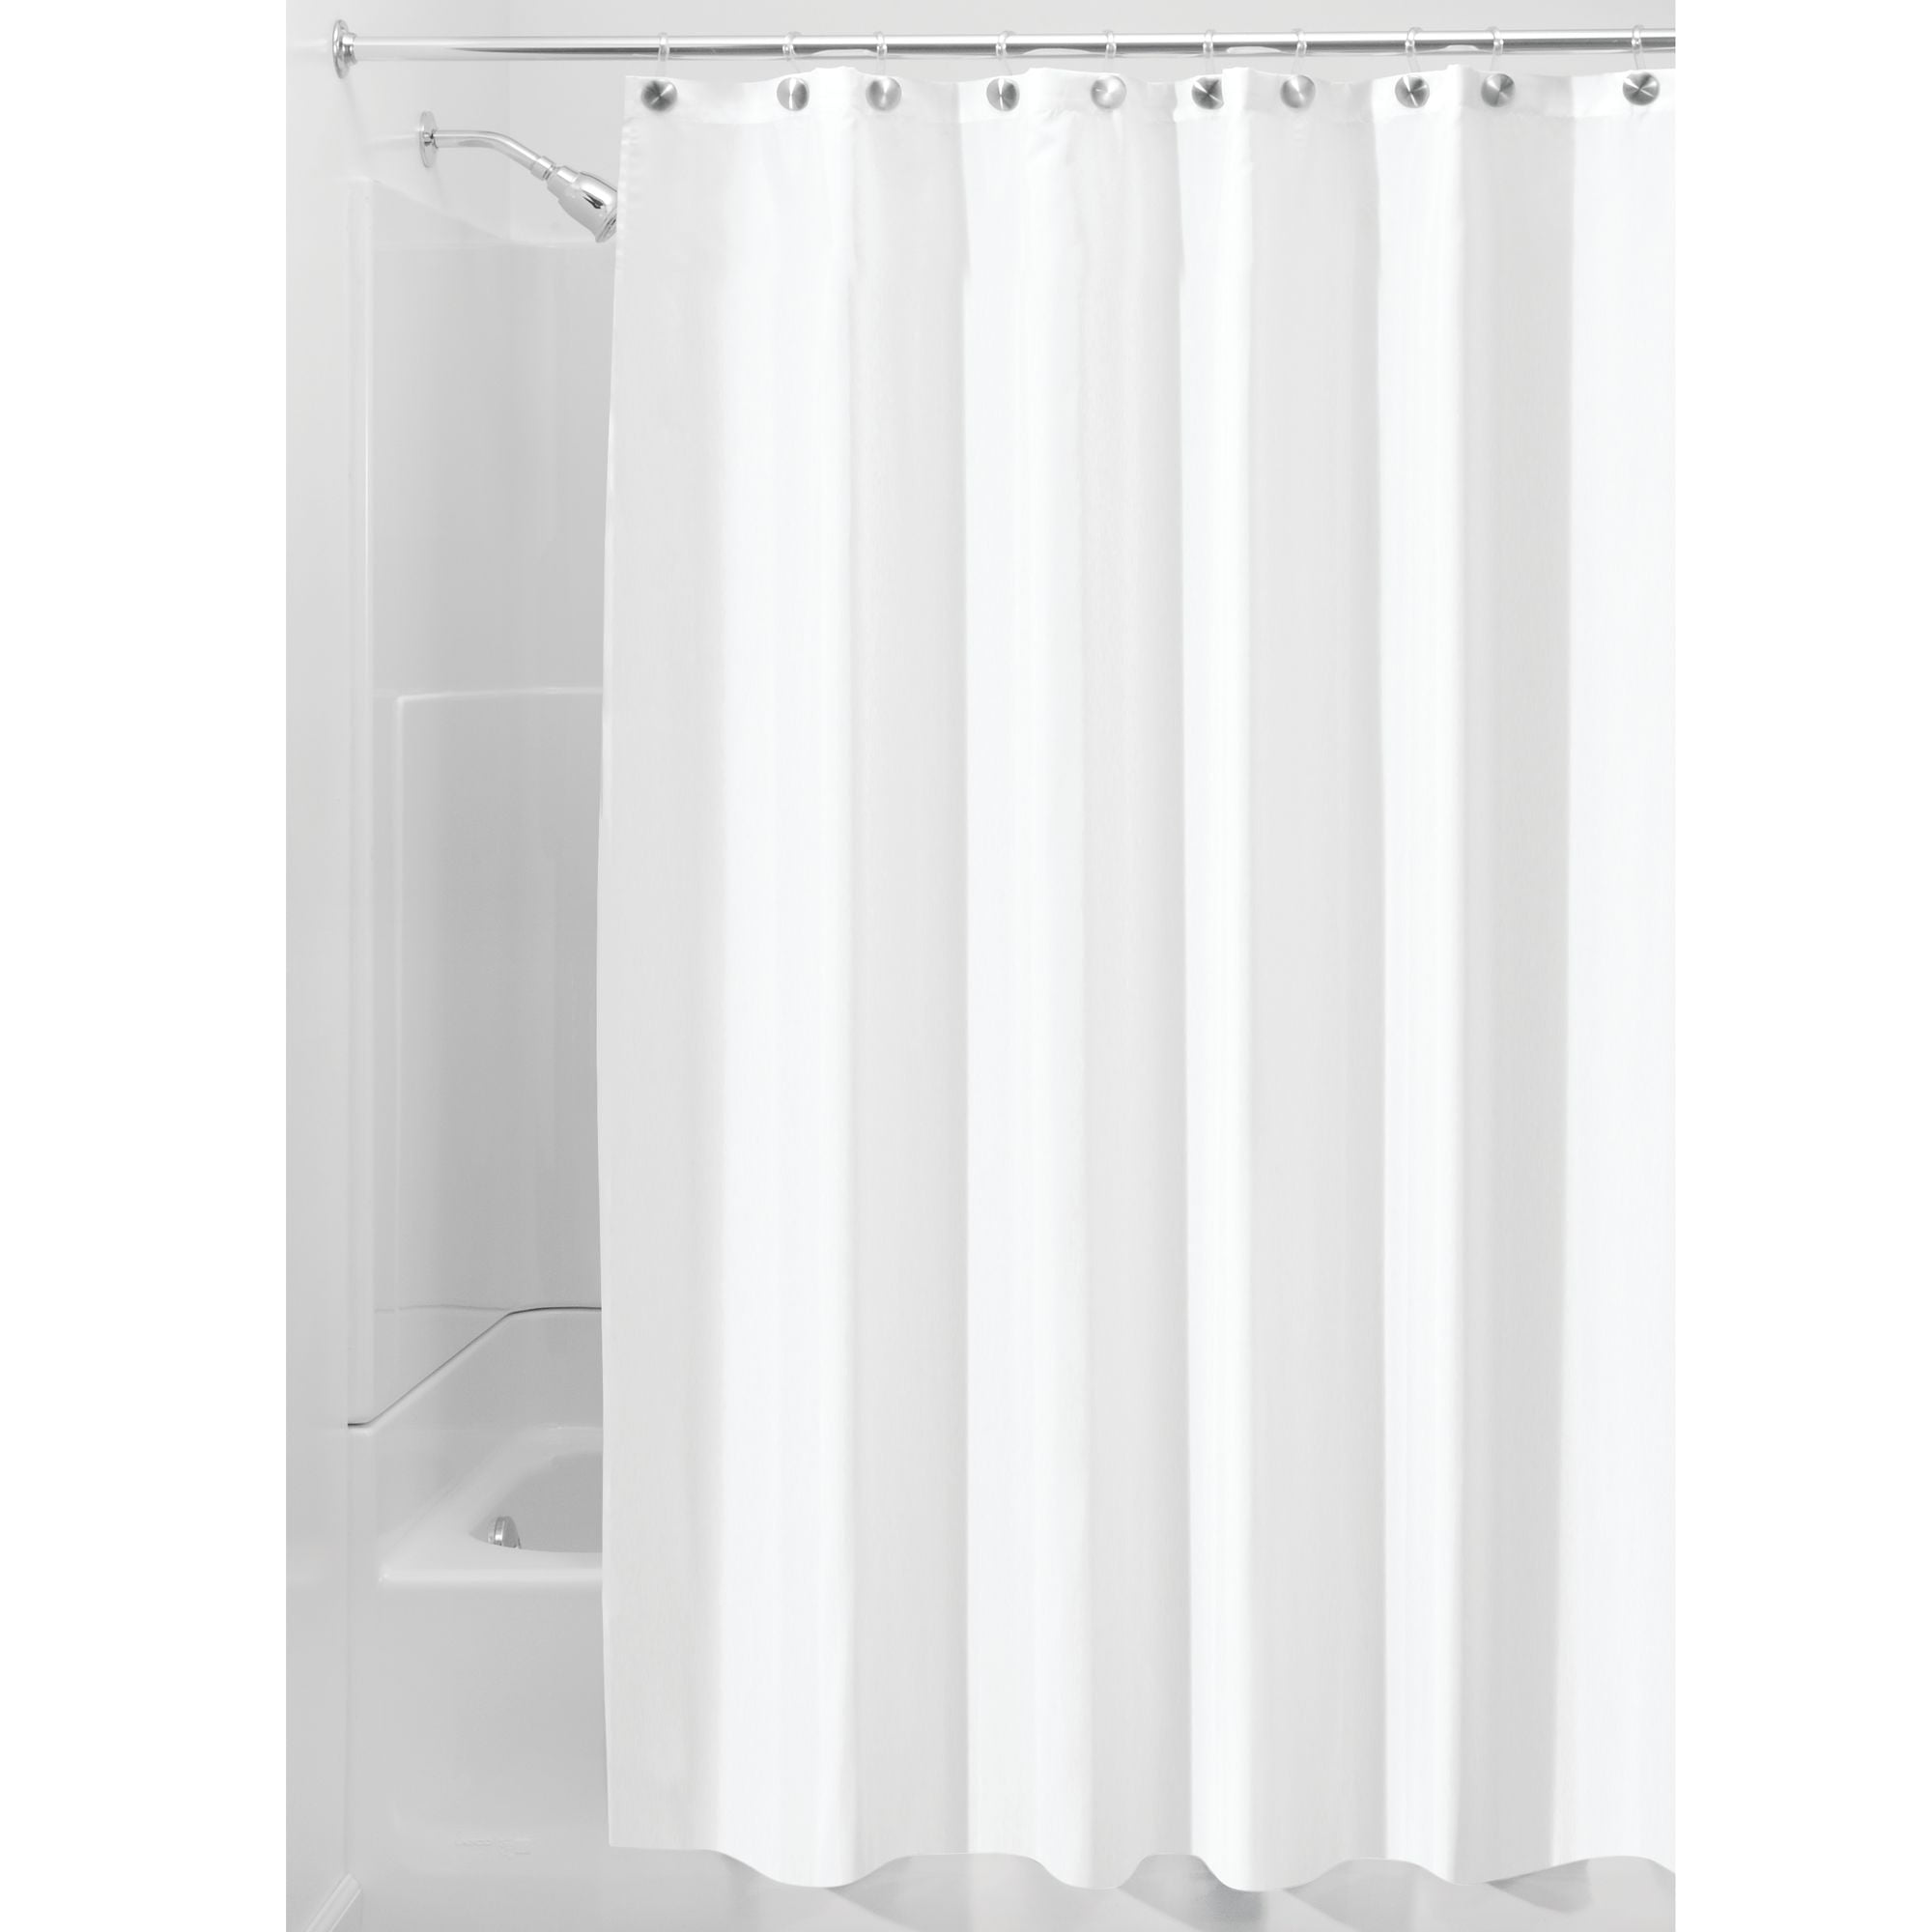 Interdesign Waterproof Fabric Shower, 108 Shower Curtain Fabric